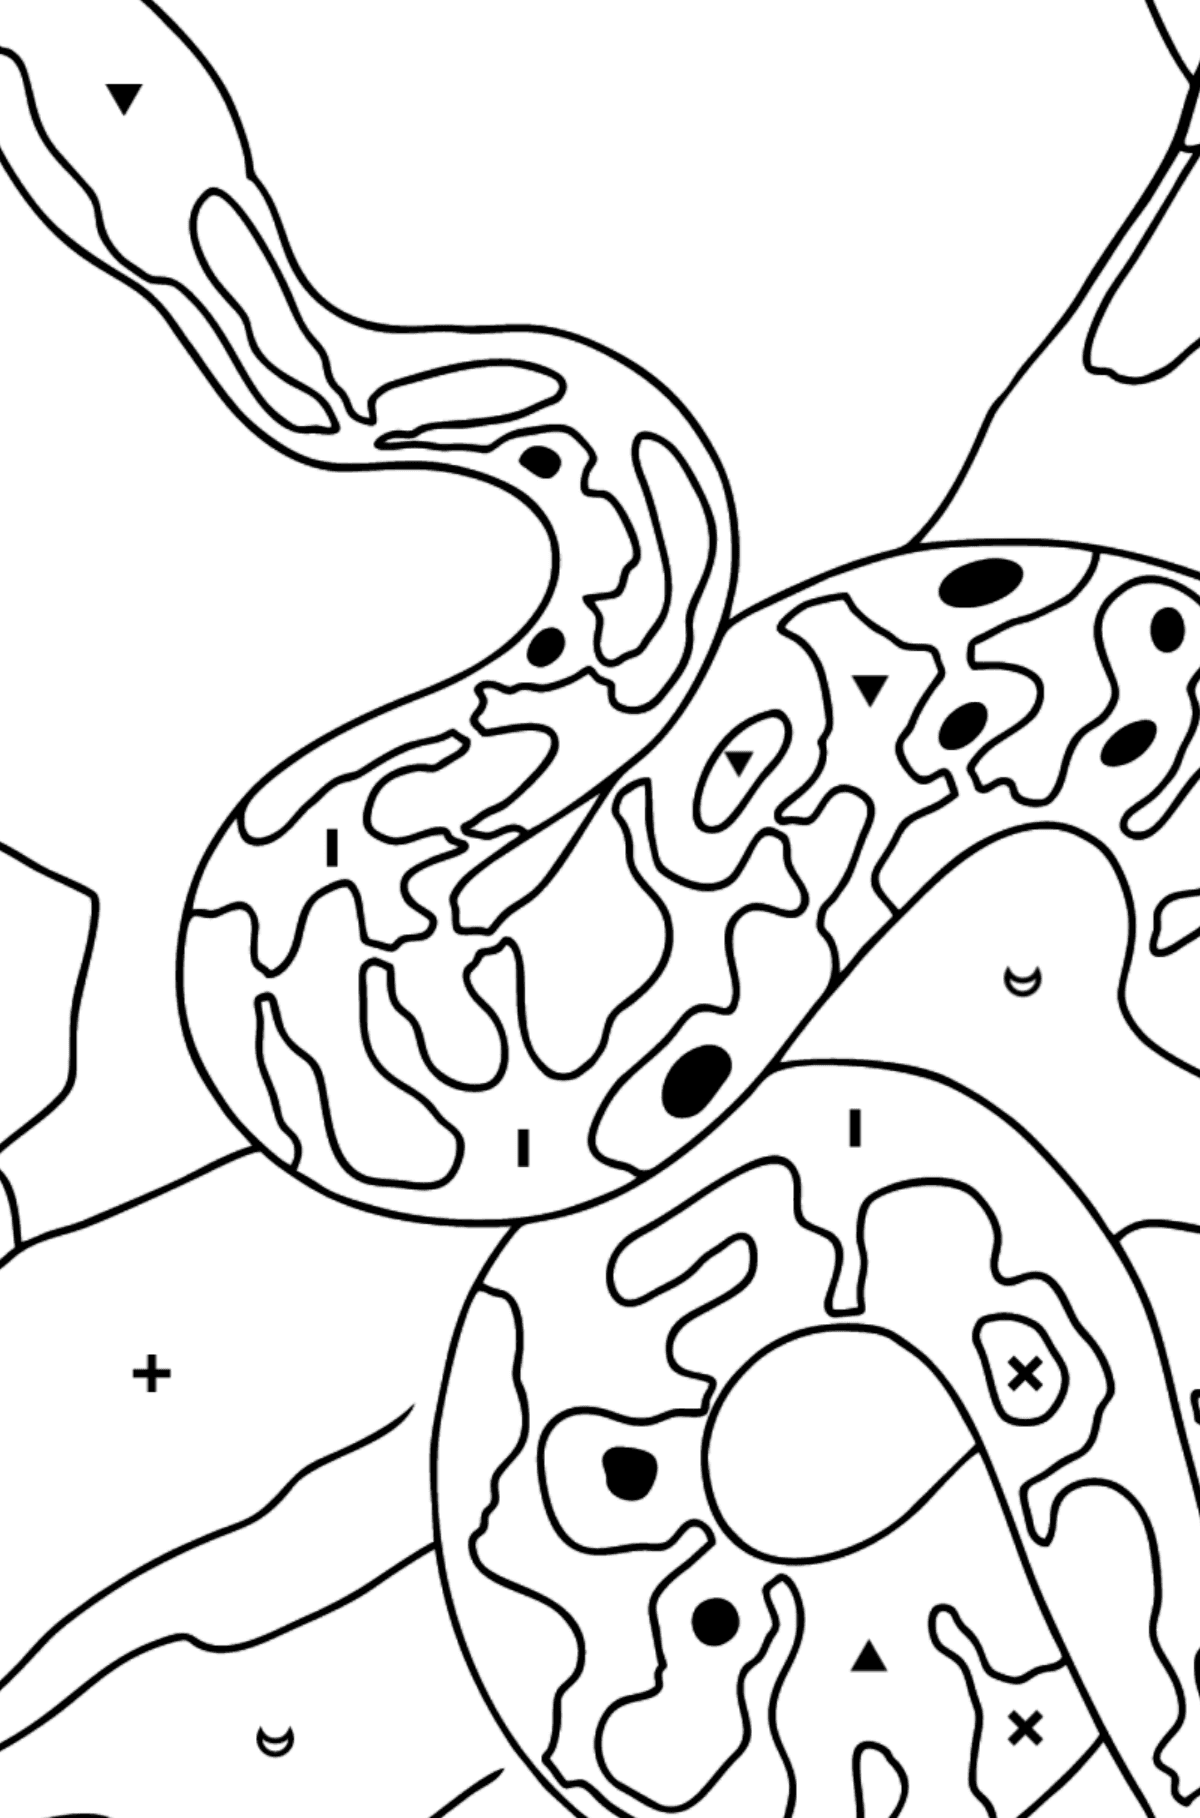 Disegno di Serpente da colorare - Colorare per simboli per bambini